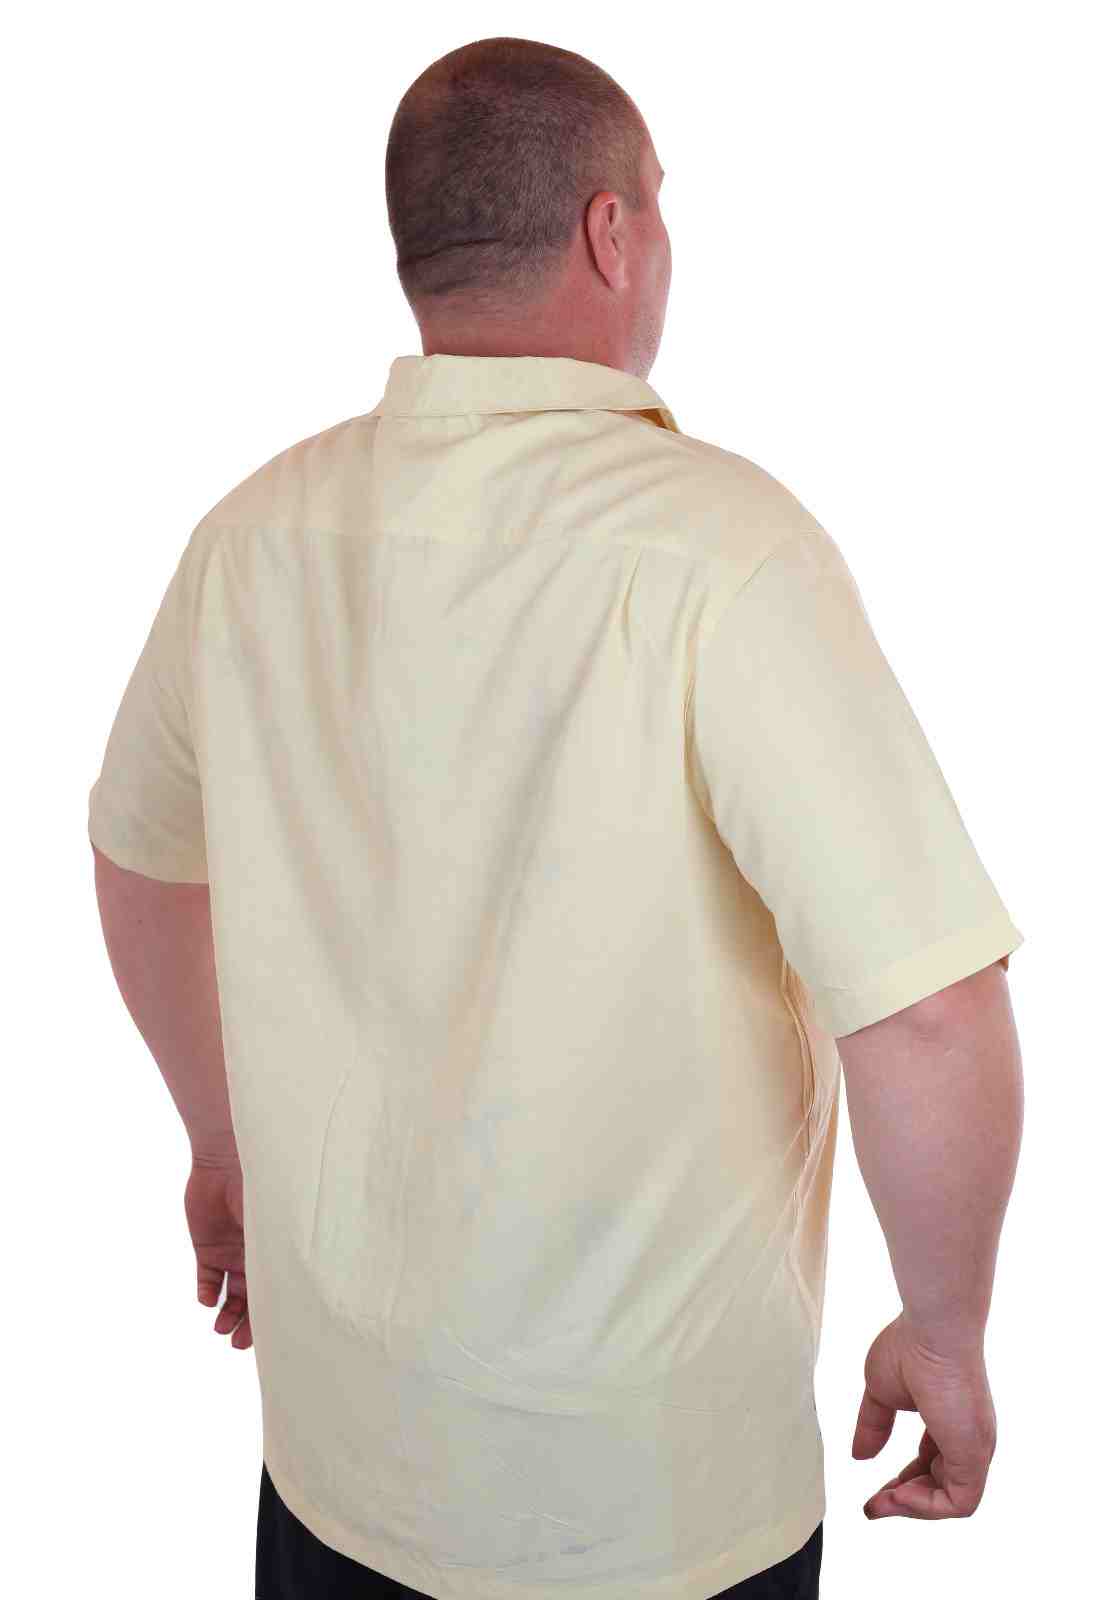 Мужская рубашка больших размеров (батал) к летнему отпуску от Caribbean Joe (США)